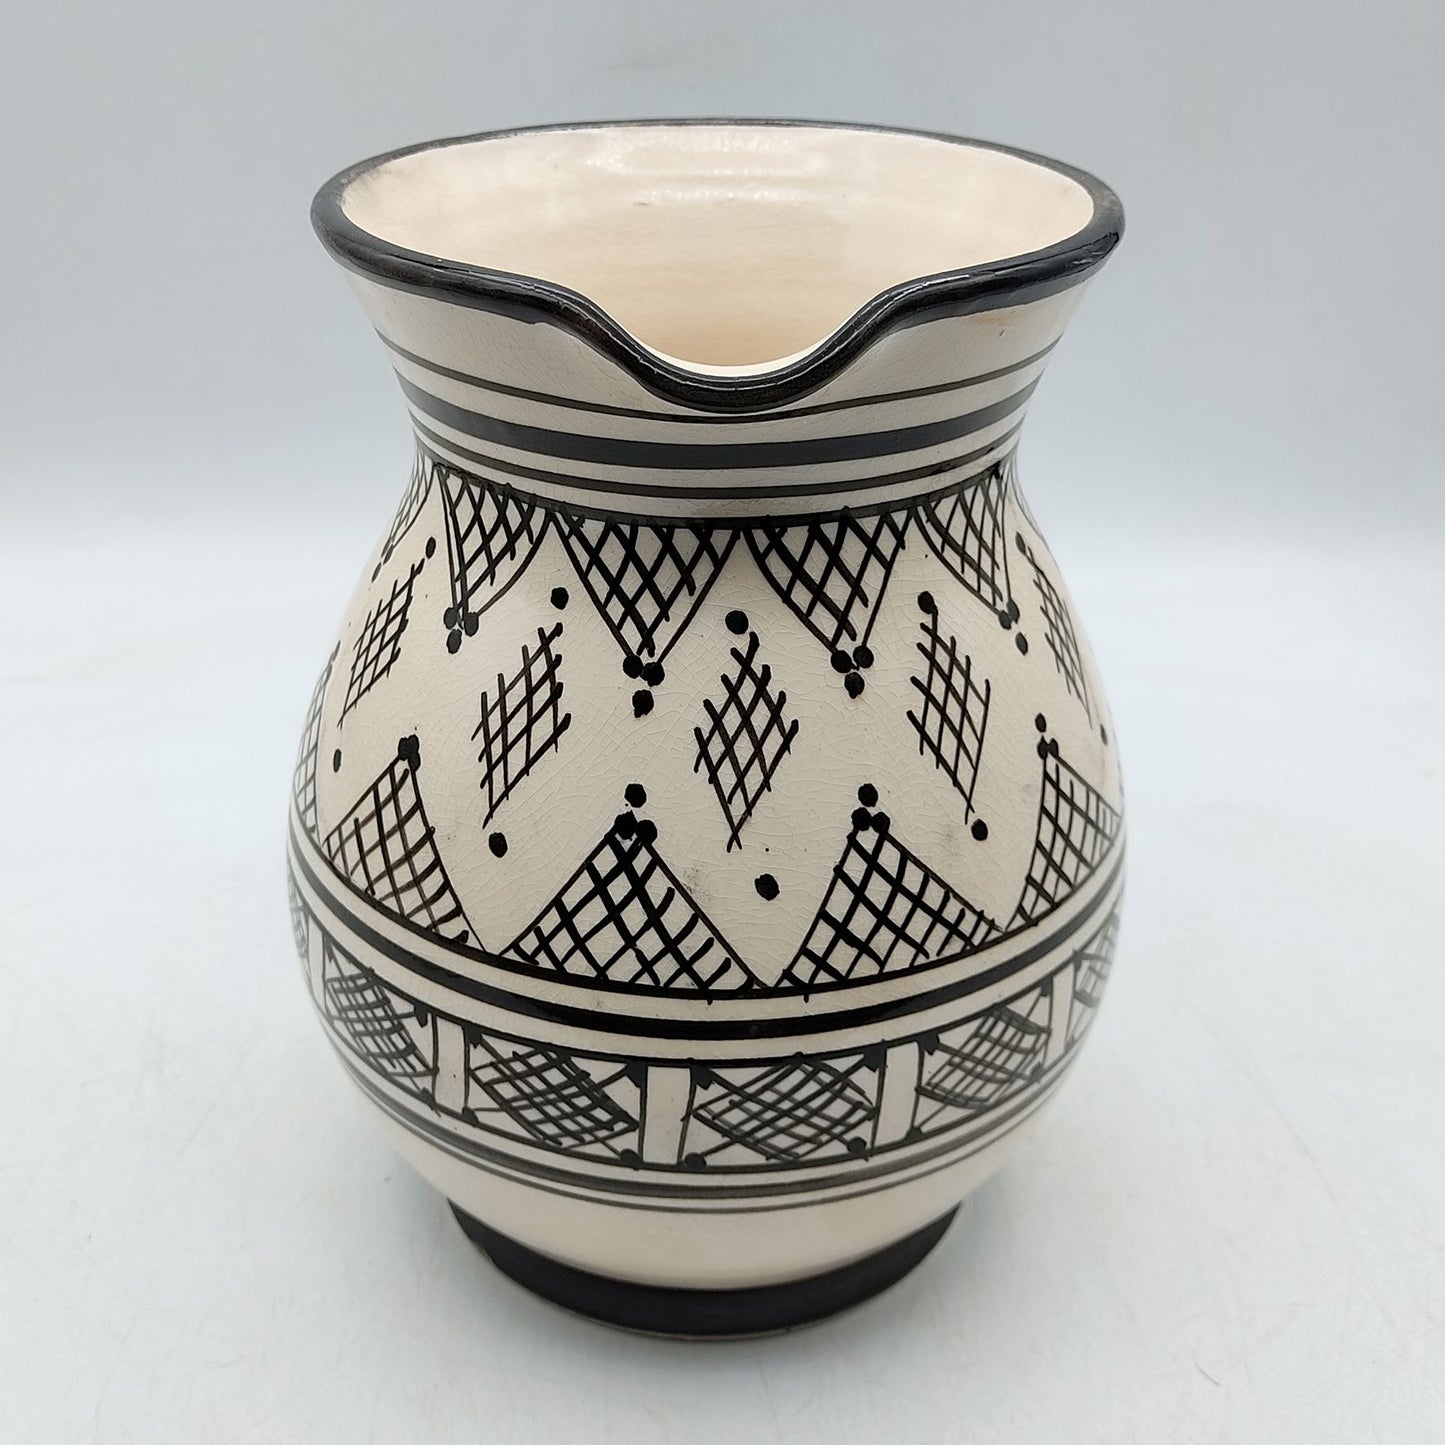 Brocca Caraffa Ceramica Terracotta Etnica Marocco Marocchina L. 1,5 Dipinta Mano 0302221004